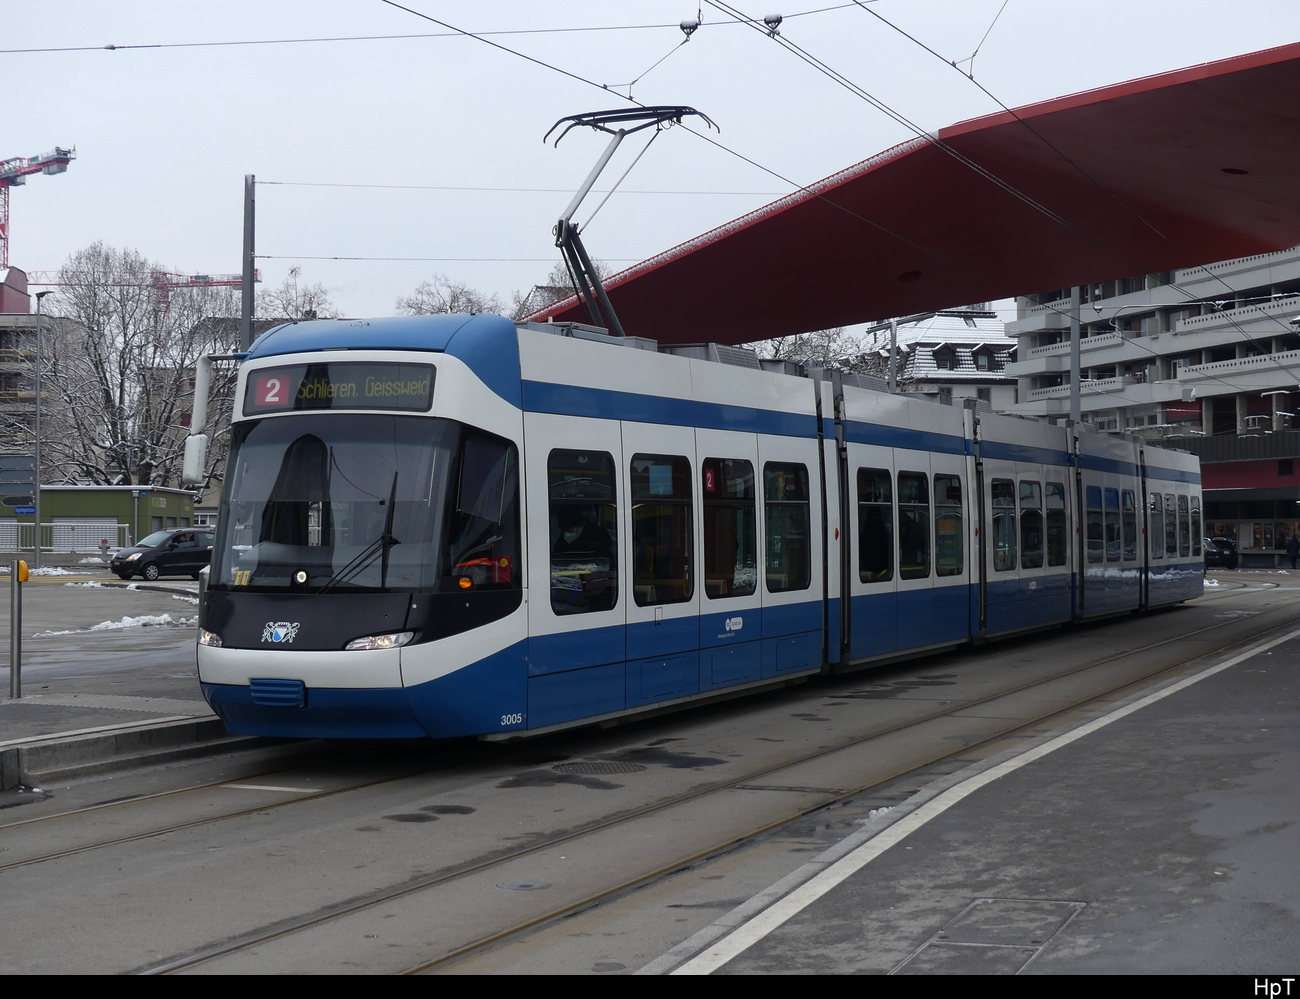 VBZ - Tram Be 5/6  3005 unterwegs in Schlieren am 17.12.2022